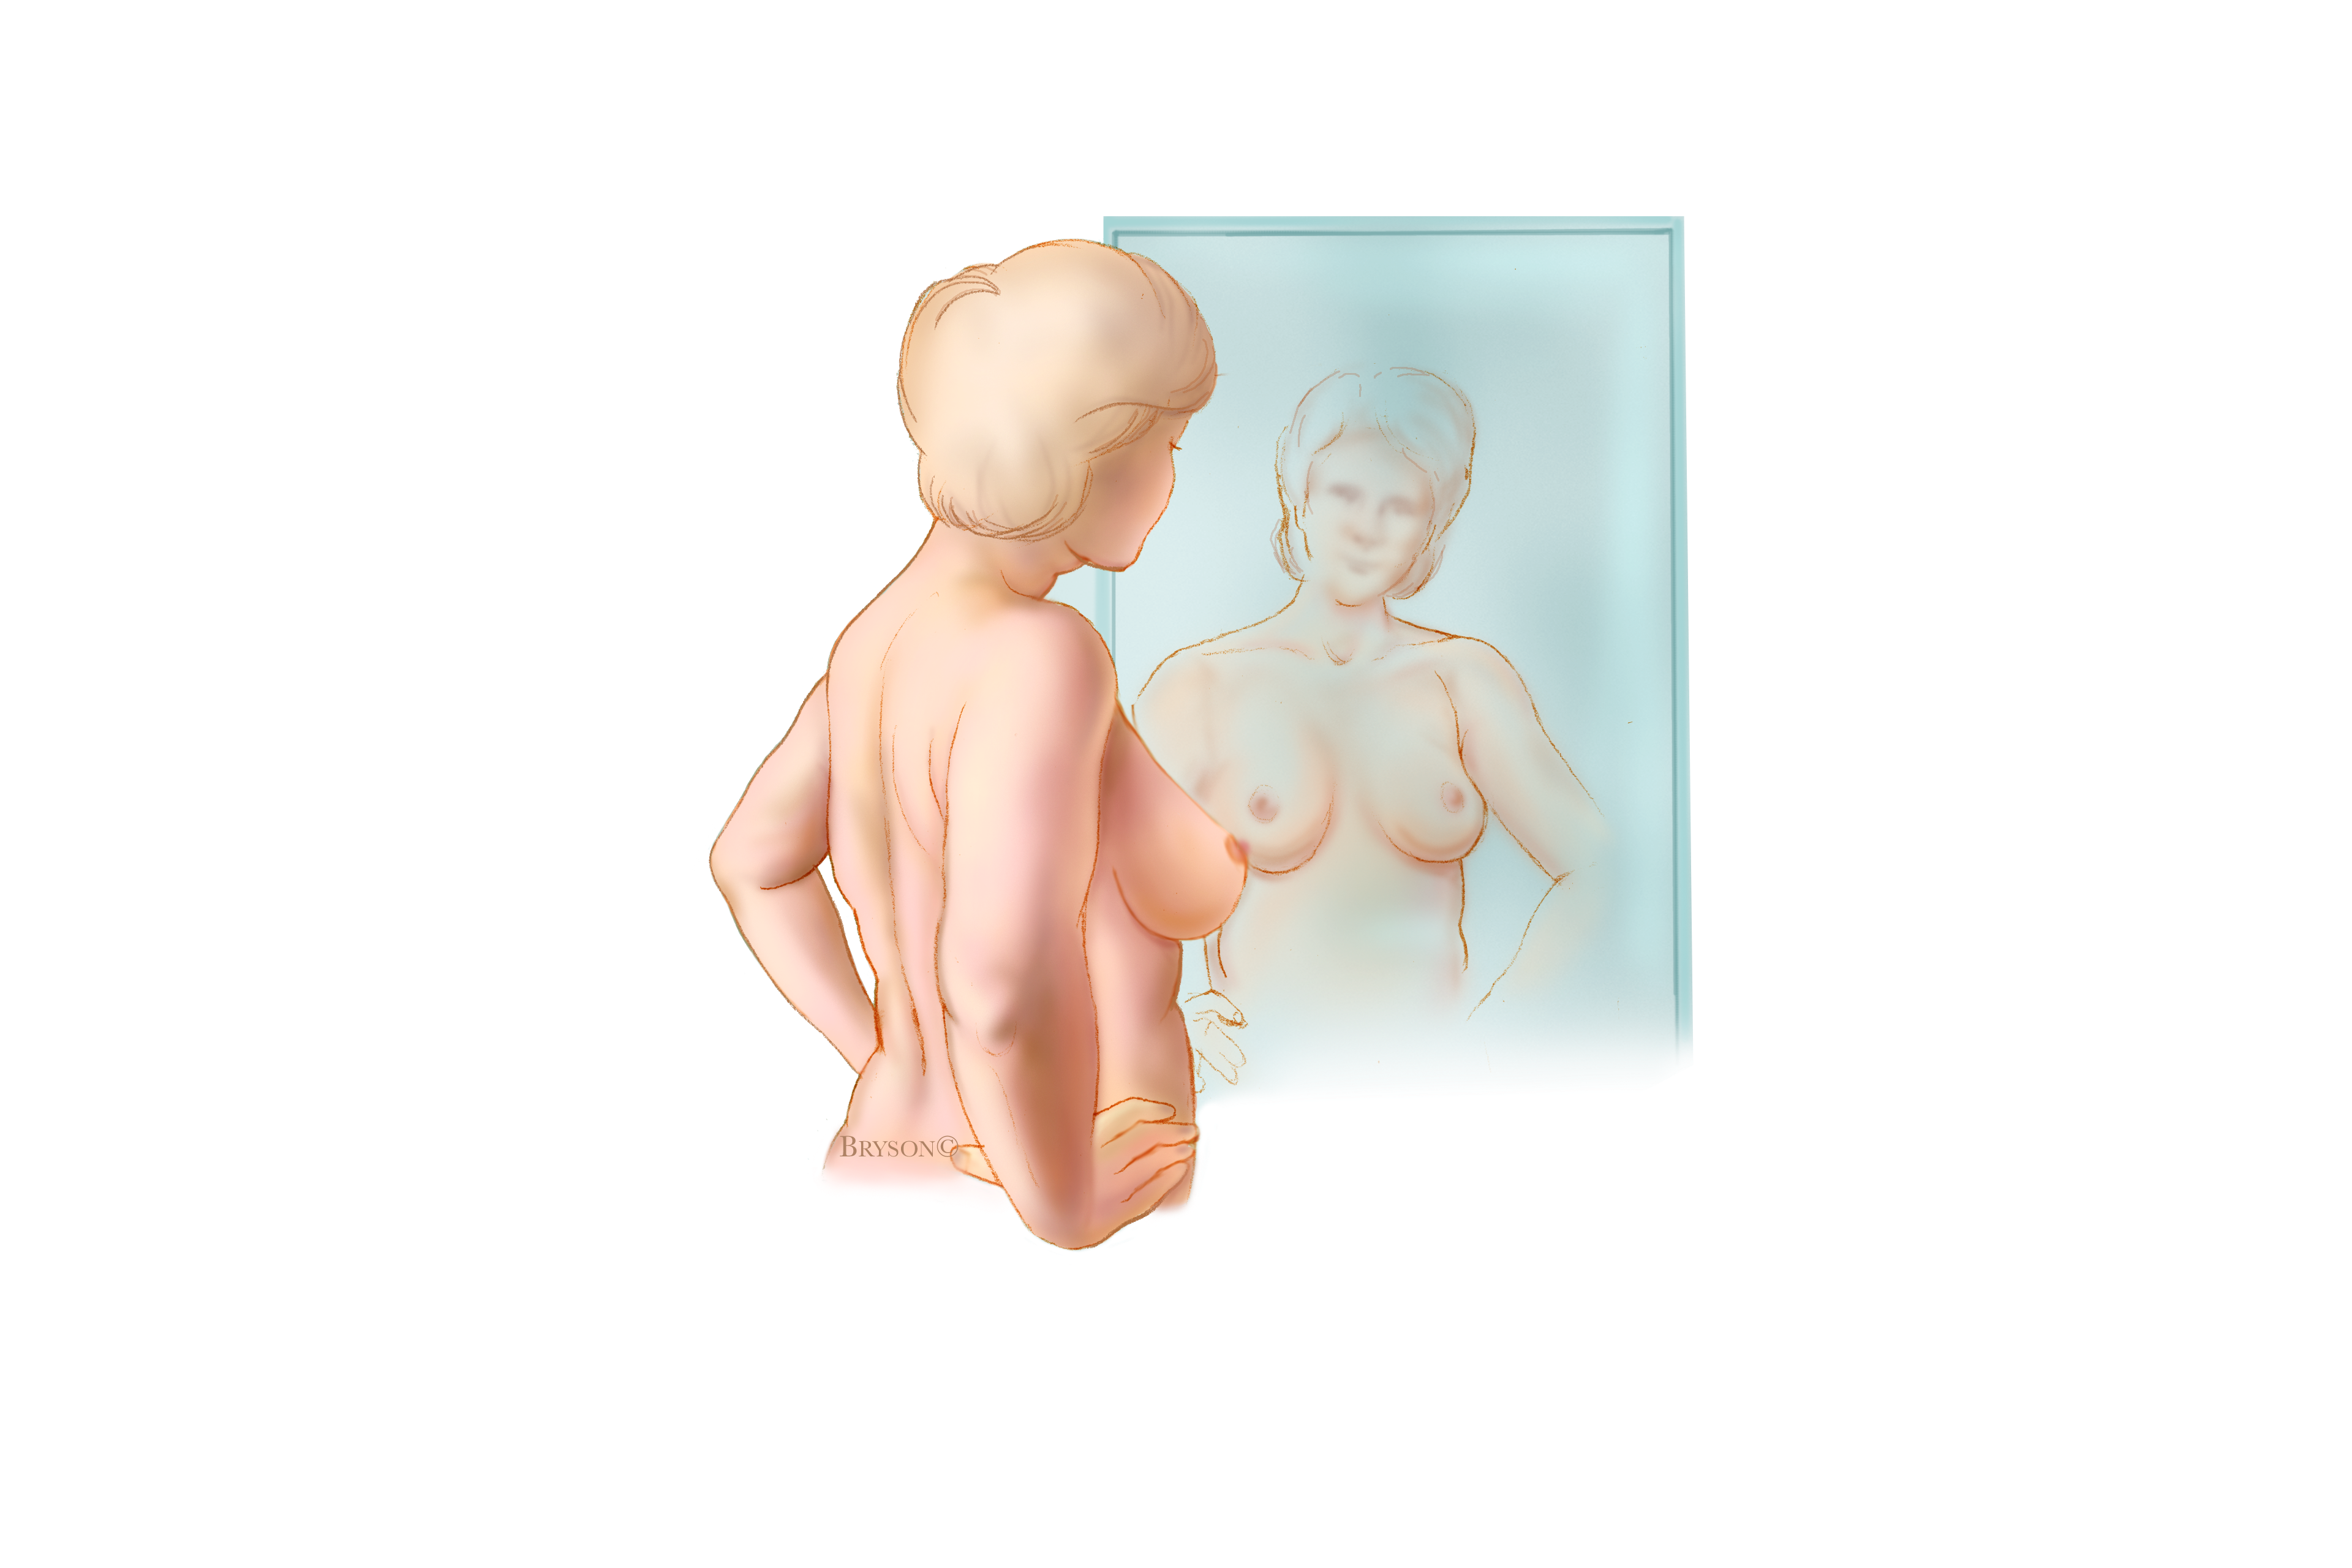 La autoexploración de la mama, primer paso